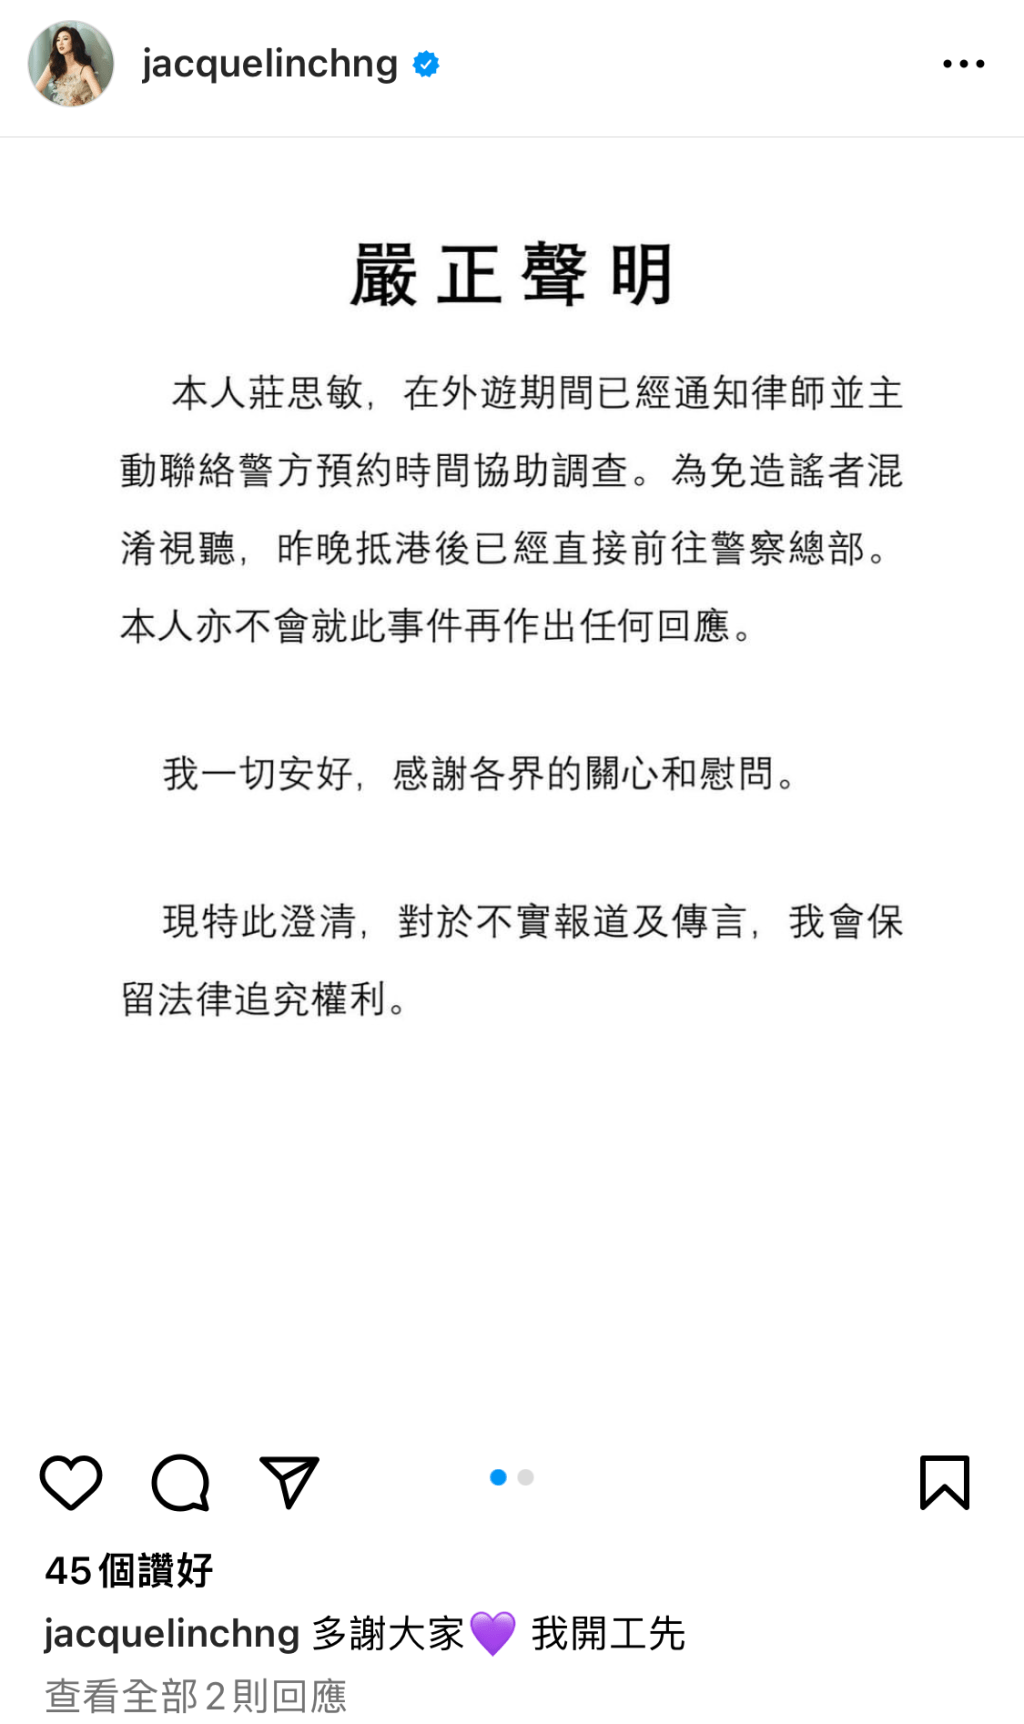 莊思敏於9月22日在IG發表聲明。